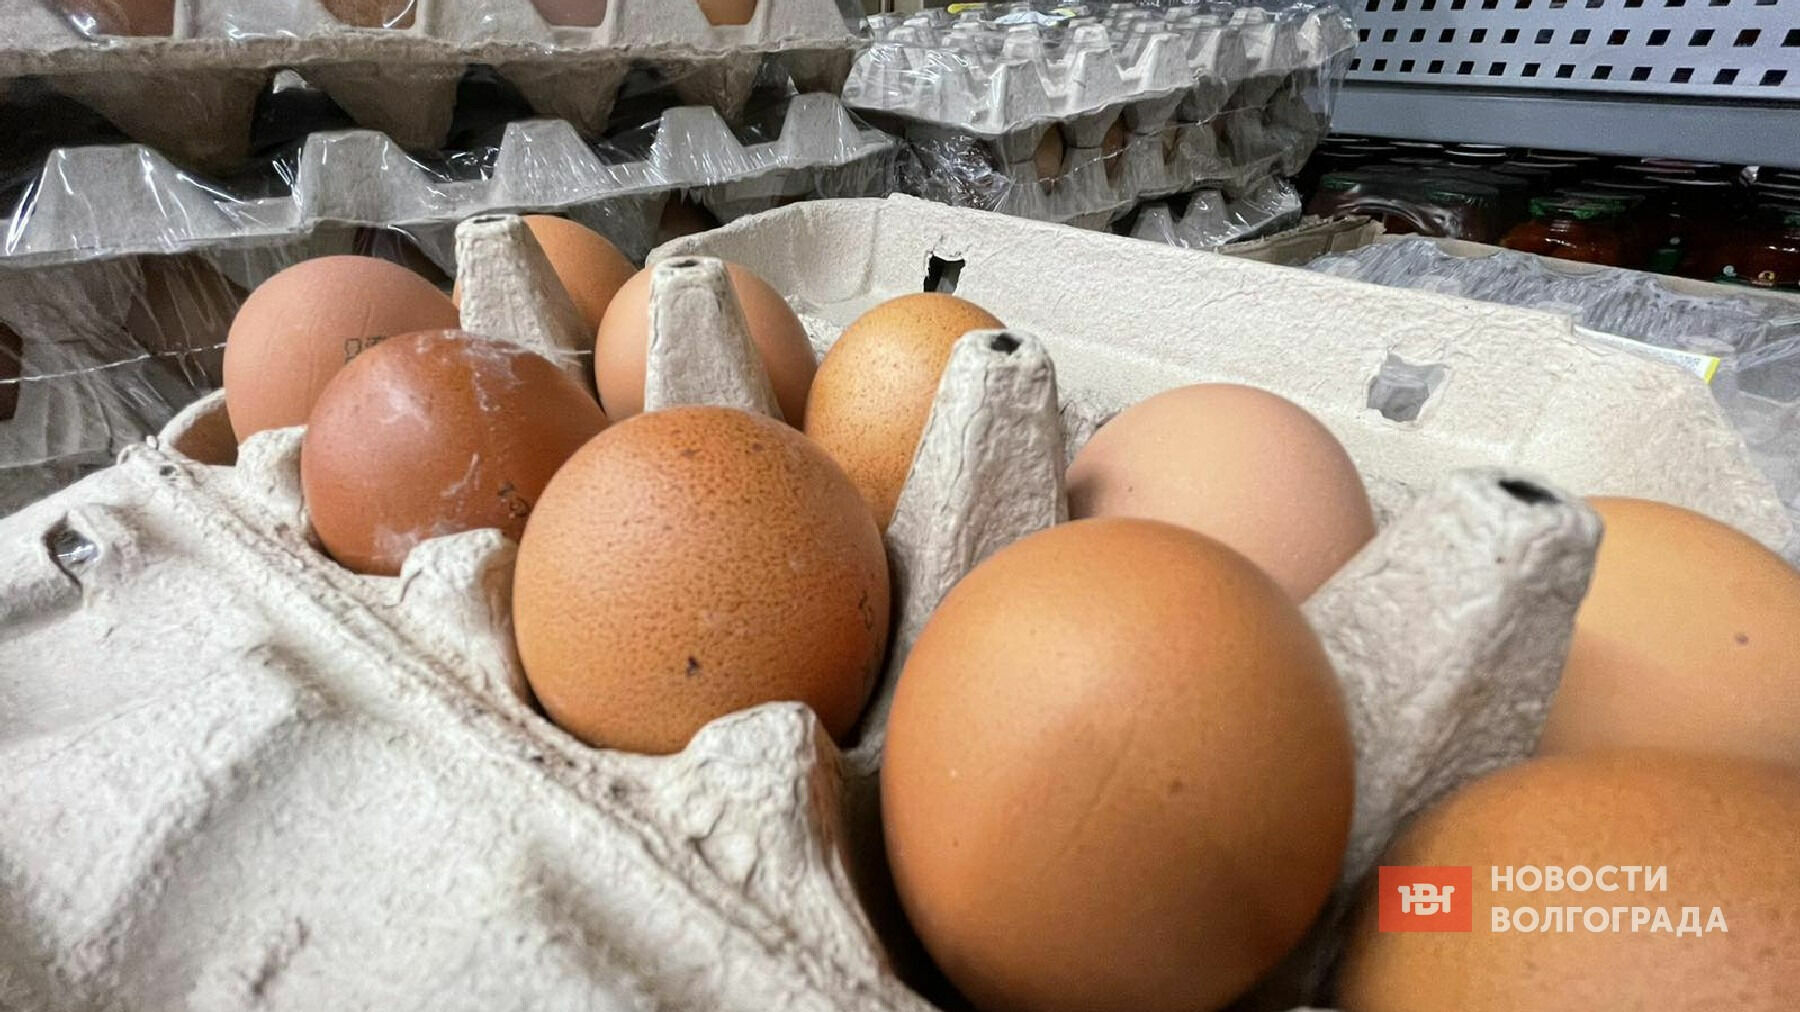 Яйца с истекшим сроком годности продавали в волгоградских магазинах